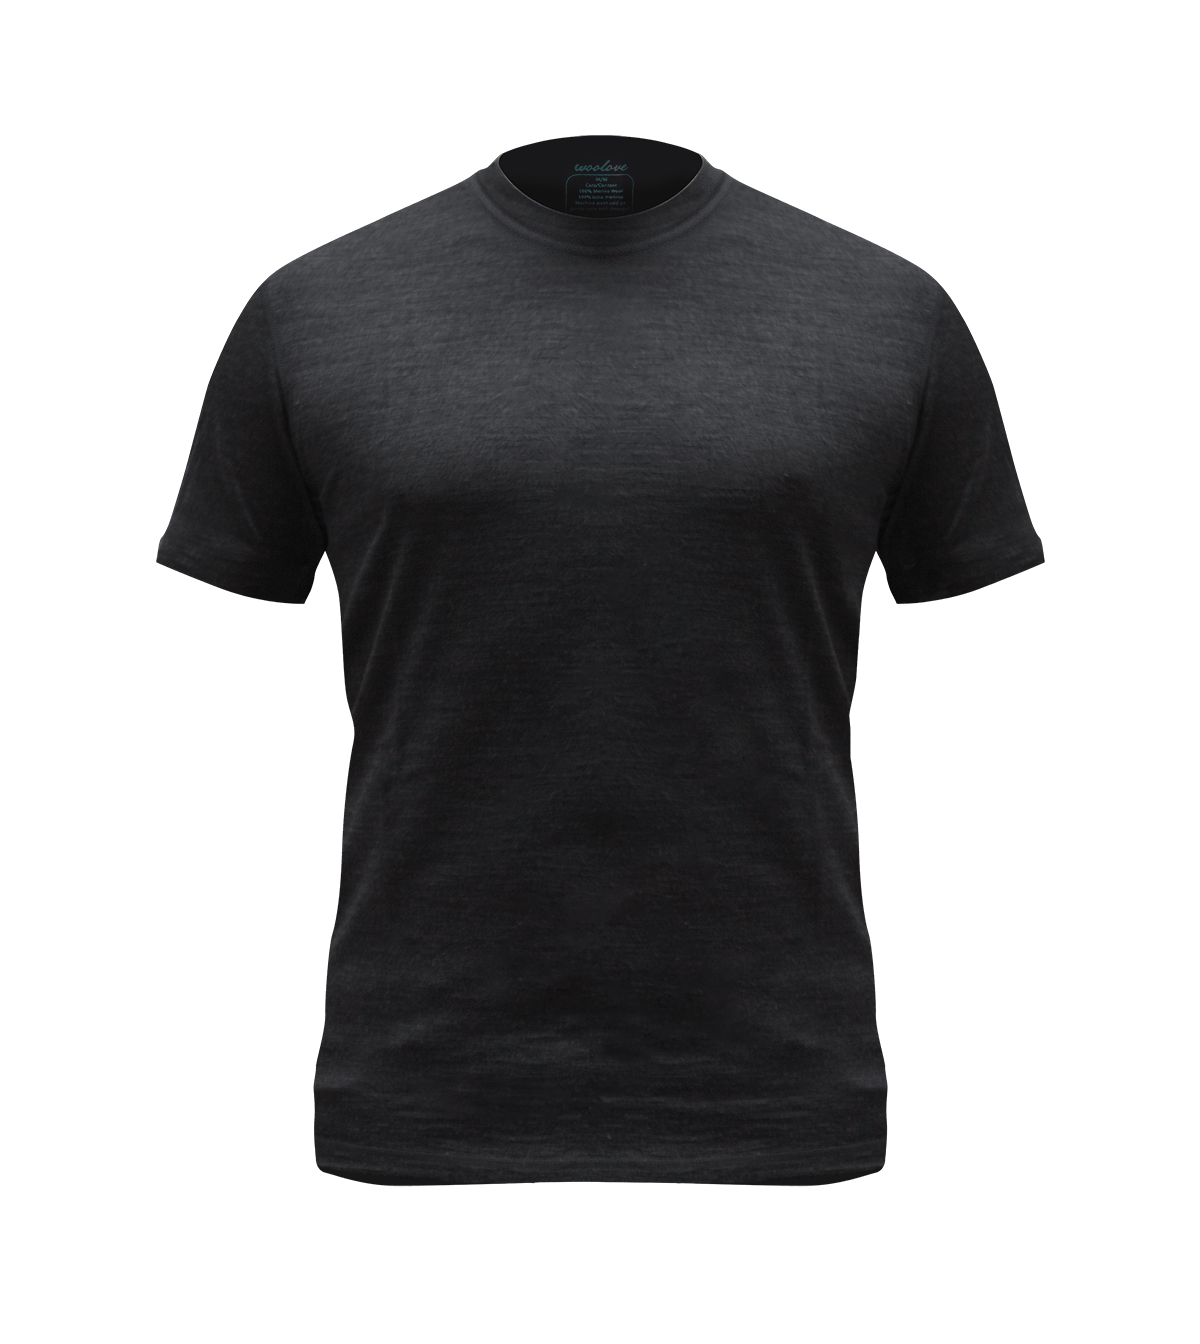 Men's 100% Merino Wool Short Sleeve T-Shirt 180g - Woolove Apparel